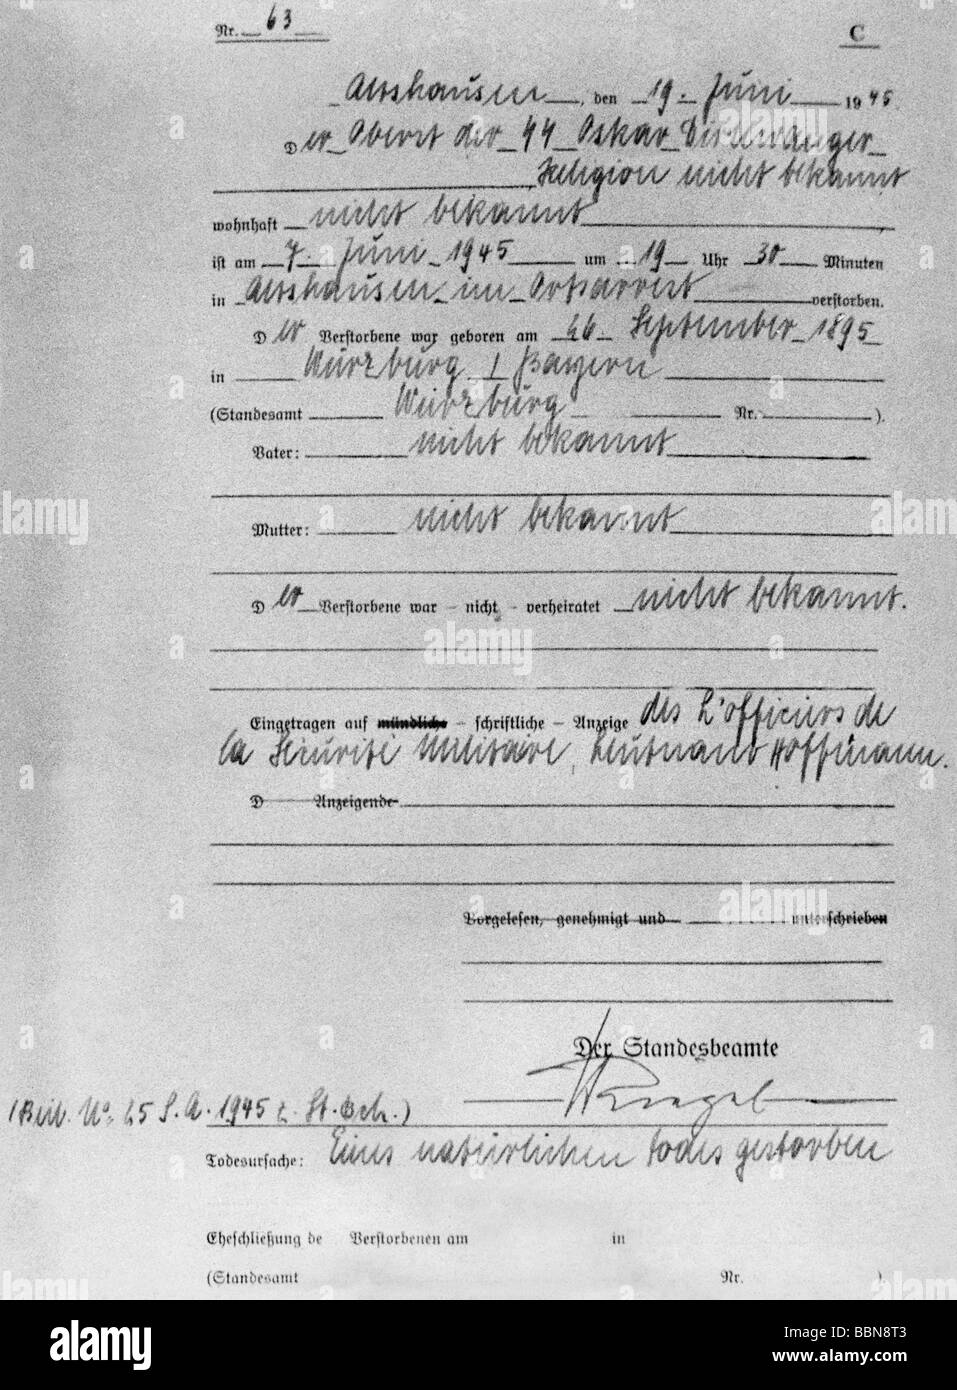 Dirlewanger, Oskar, 26.9.1895 - 6.6.1945, German military officer (SS), death certificate, Althausen, 19.6.1945, , Stock Photo